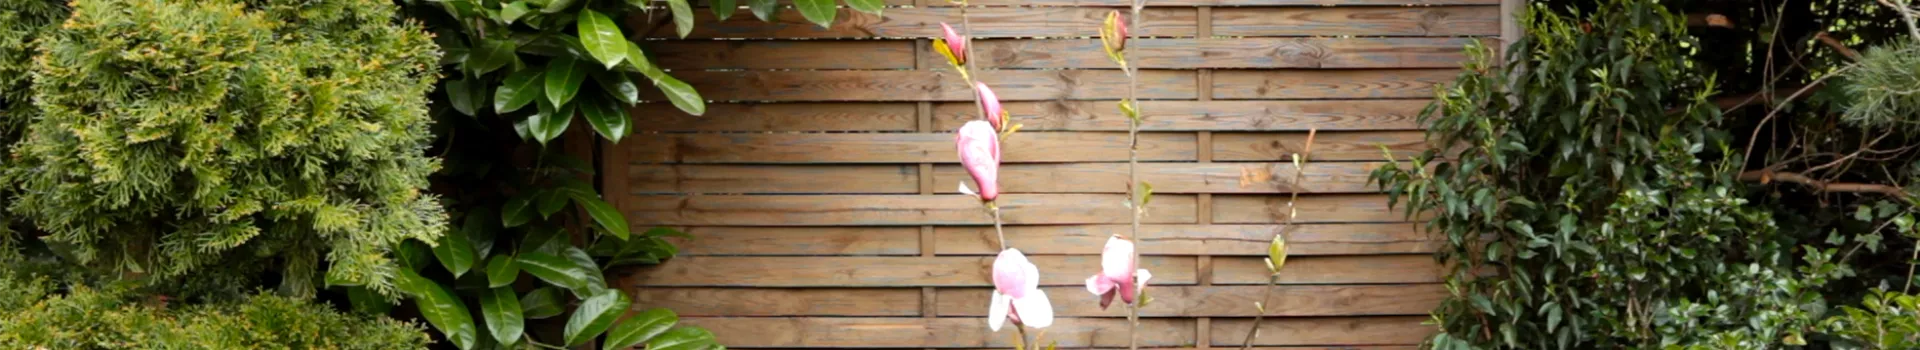 Magnolie - Einpflanzen im Garten